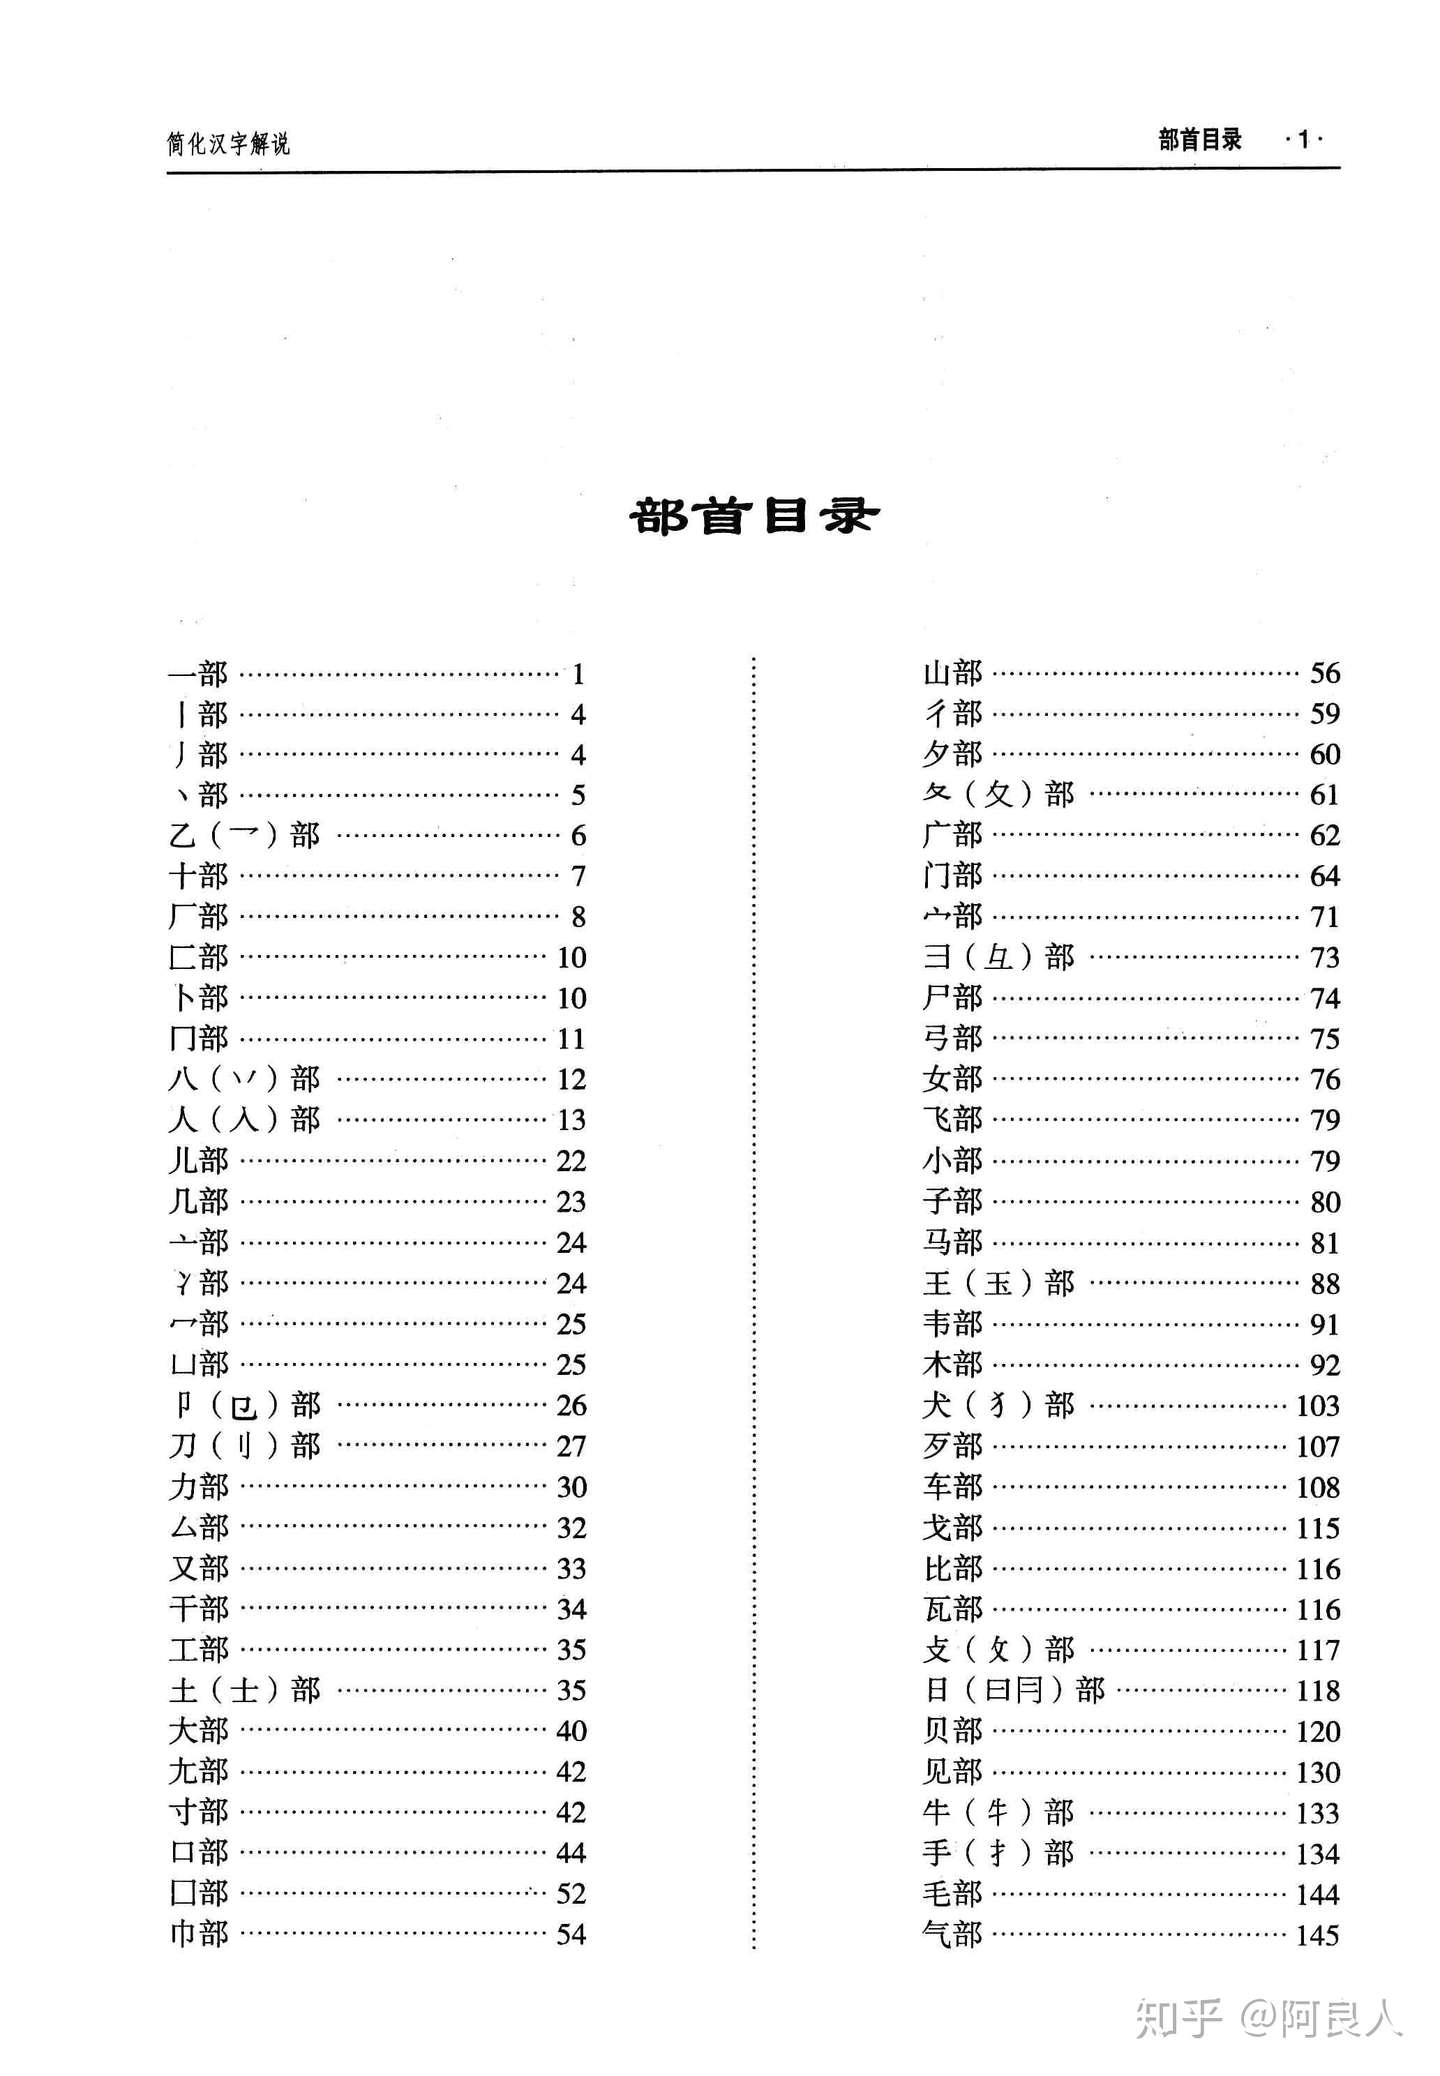 簡化漢字解說 索引數位化完成 知乎